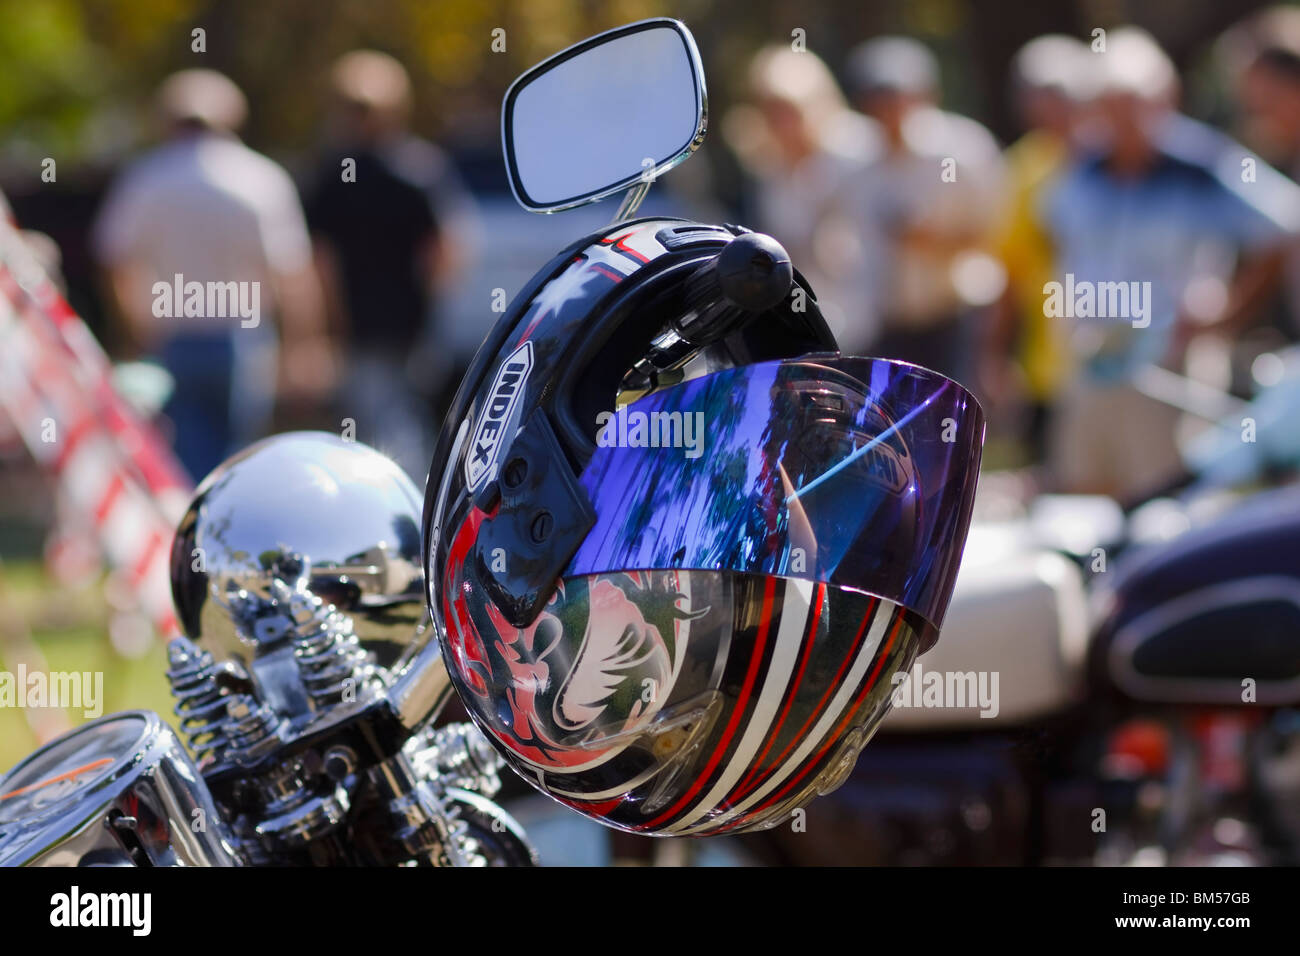 Bunte Helm drapiert auf dem Lenker eines Motorrads. Nicht erkennbare Personen im Hintergrund. Vordergrund konzentrieren. Stockfoto